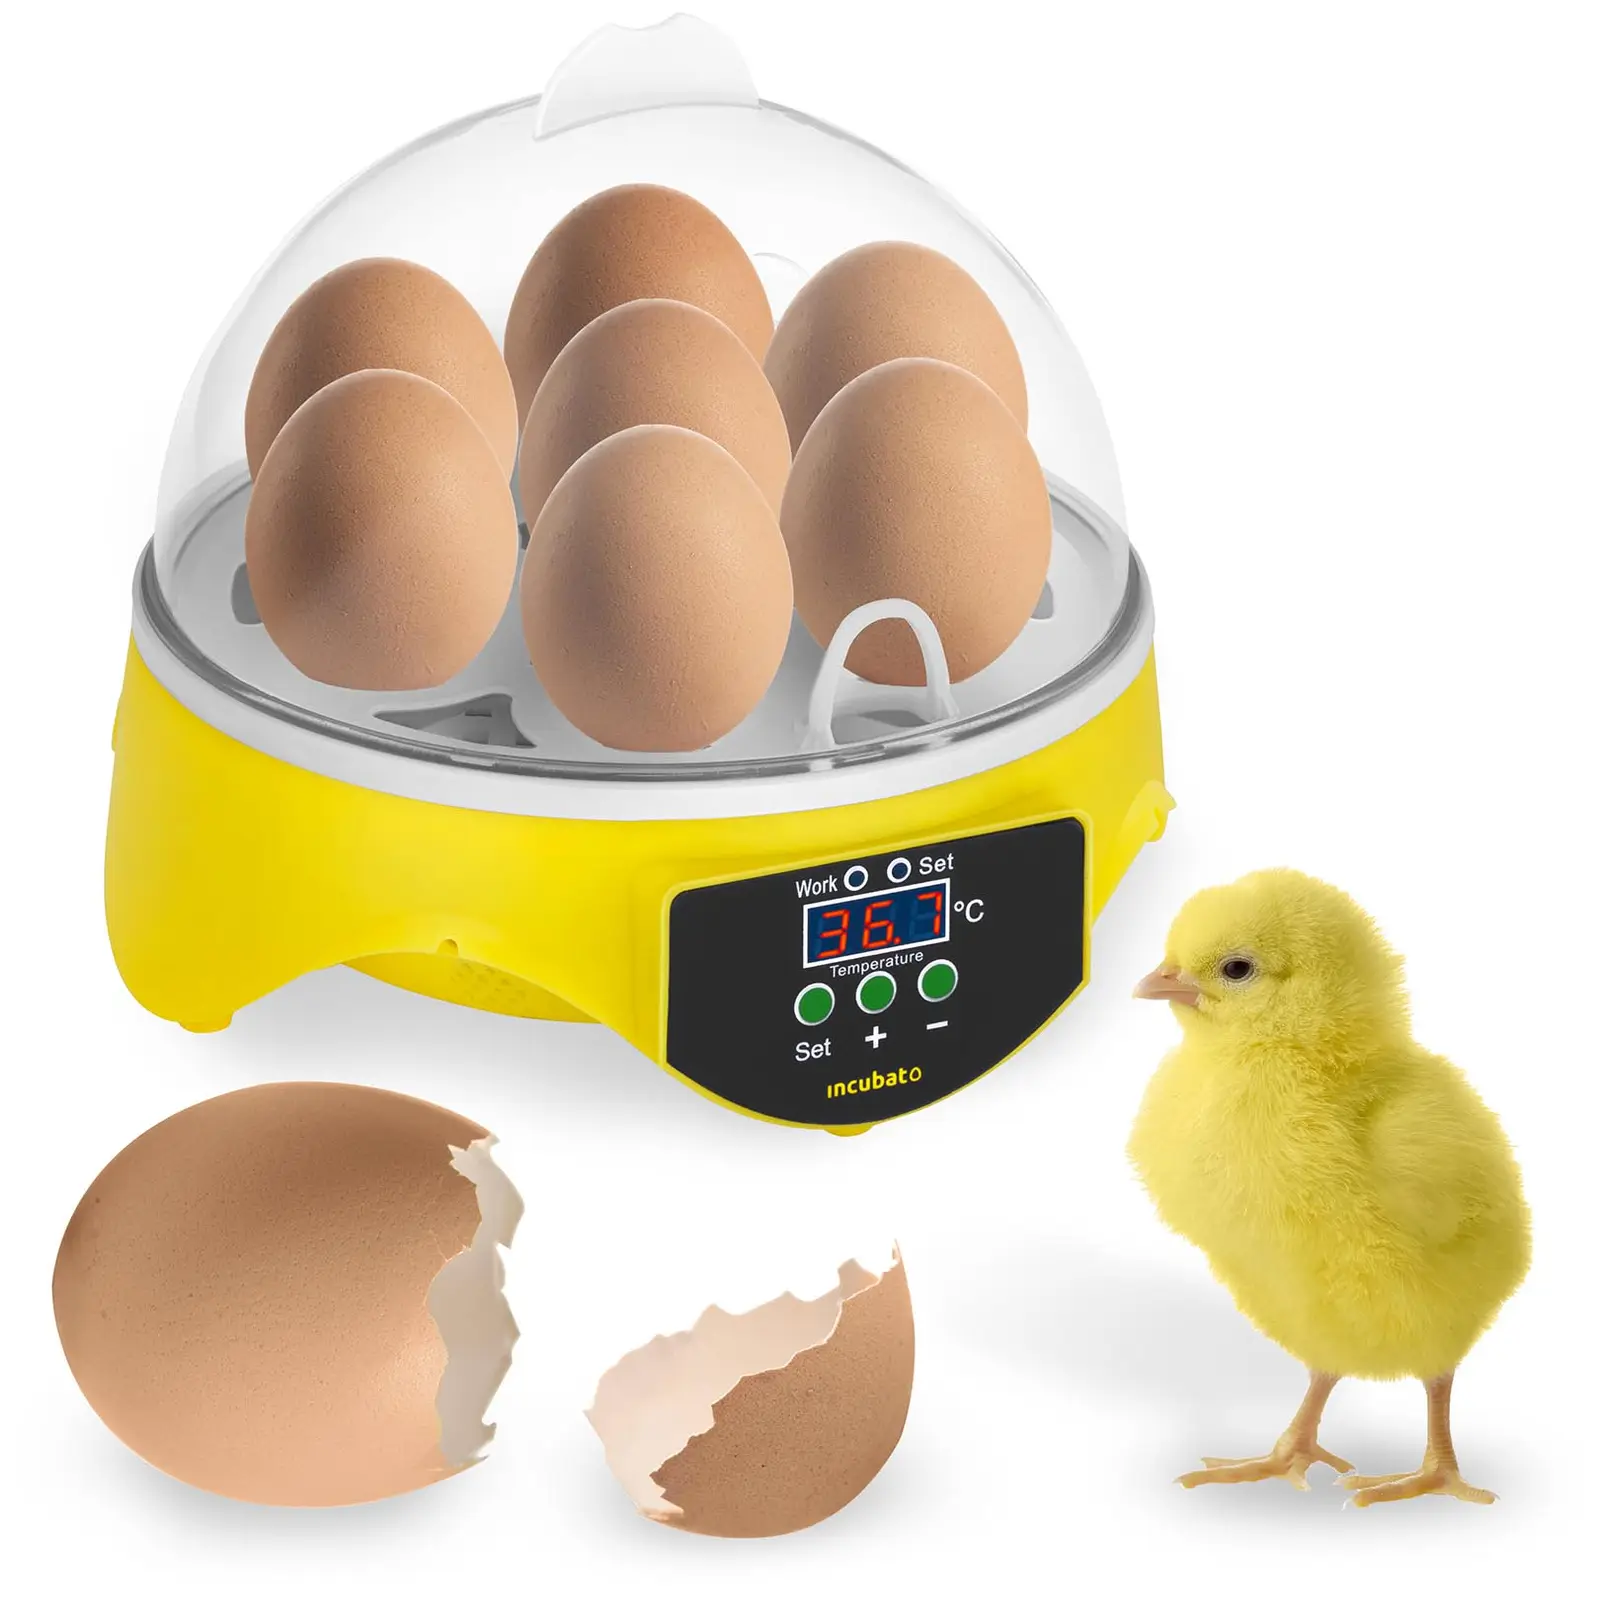 Broedmachine - 7 eieren - inclusief staaflamp